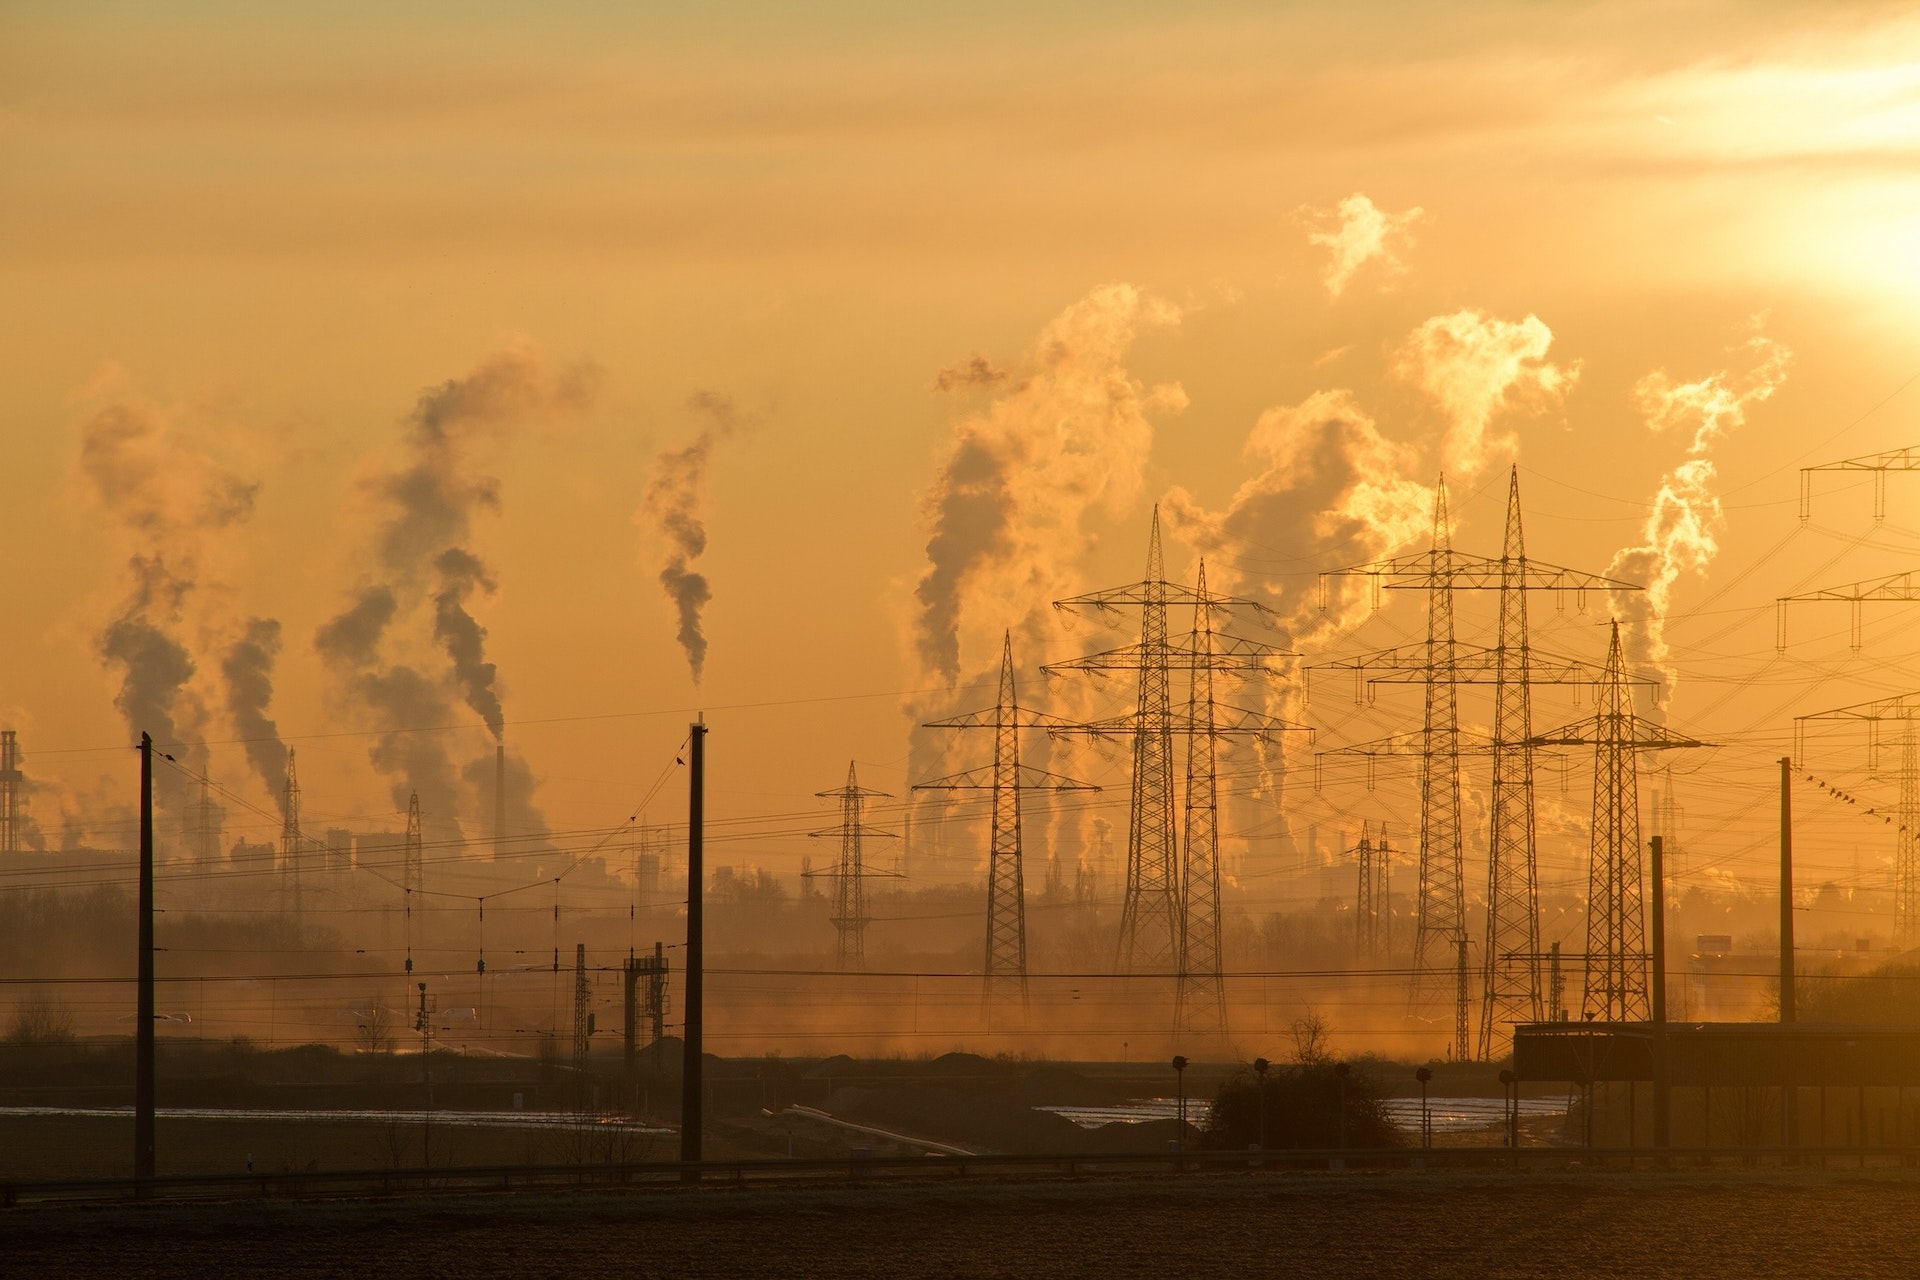 Uno studio di Harvard ha dimostrato che esiste una forte correlazione tra l'esposizione all'inquinamento atmosferico e l'insorgere della demenza clinica. 